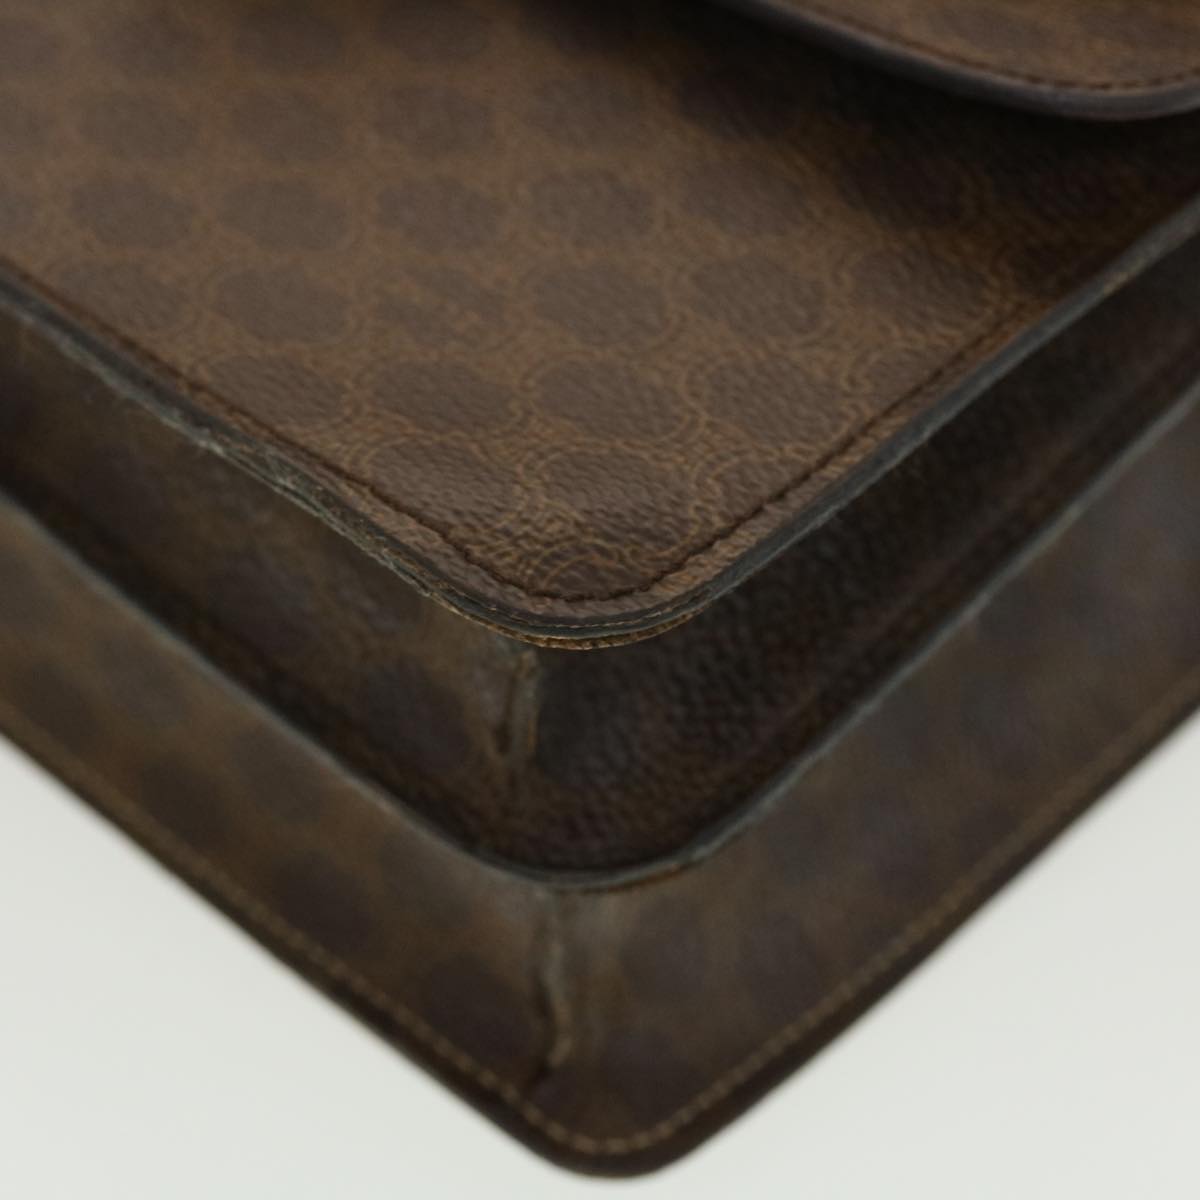 CELINE Macadam Canvas Hand Bag PVC Leather Brown Auth ar9218